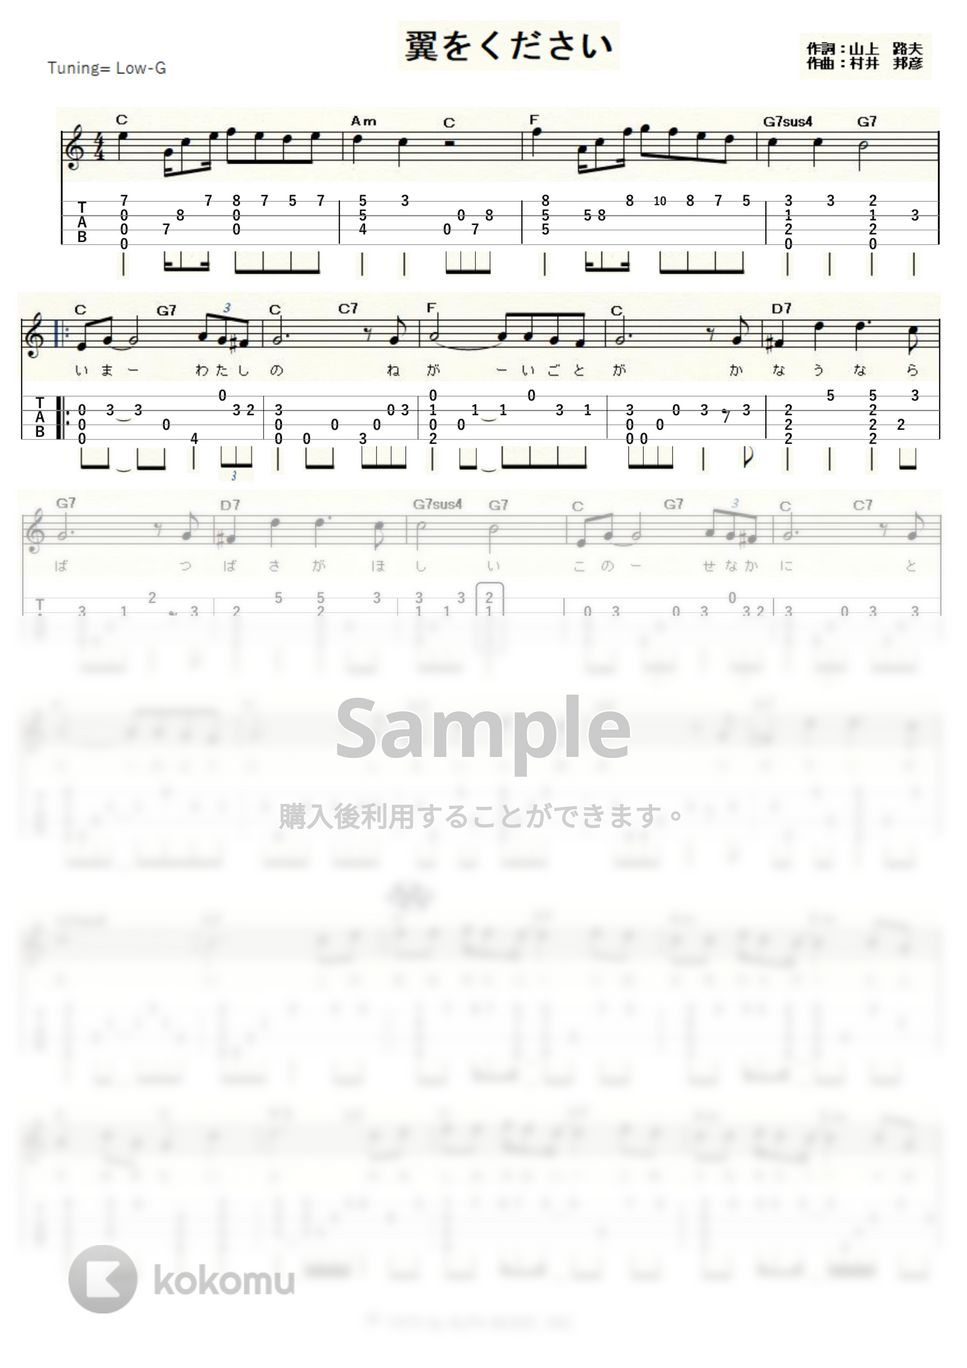 赤い鳥 - 翼をください (ｳｸﾚﾚｿﾛ/Low-G/中級) by ukulelepapa